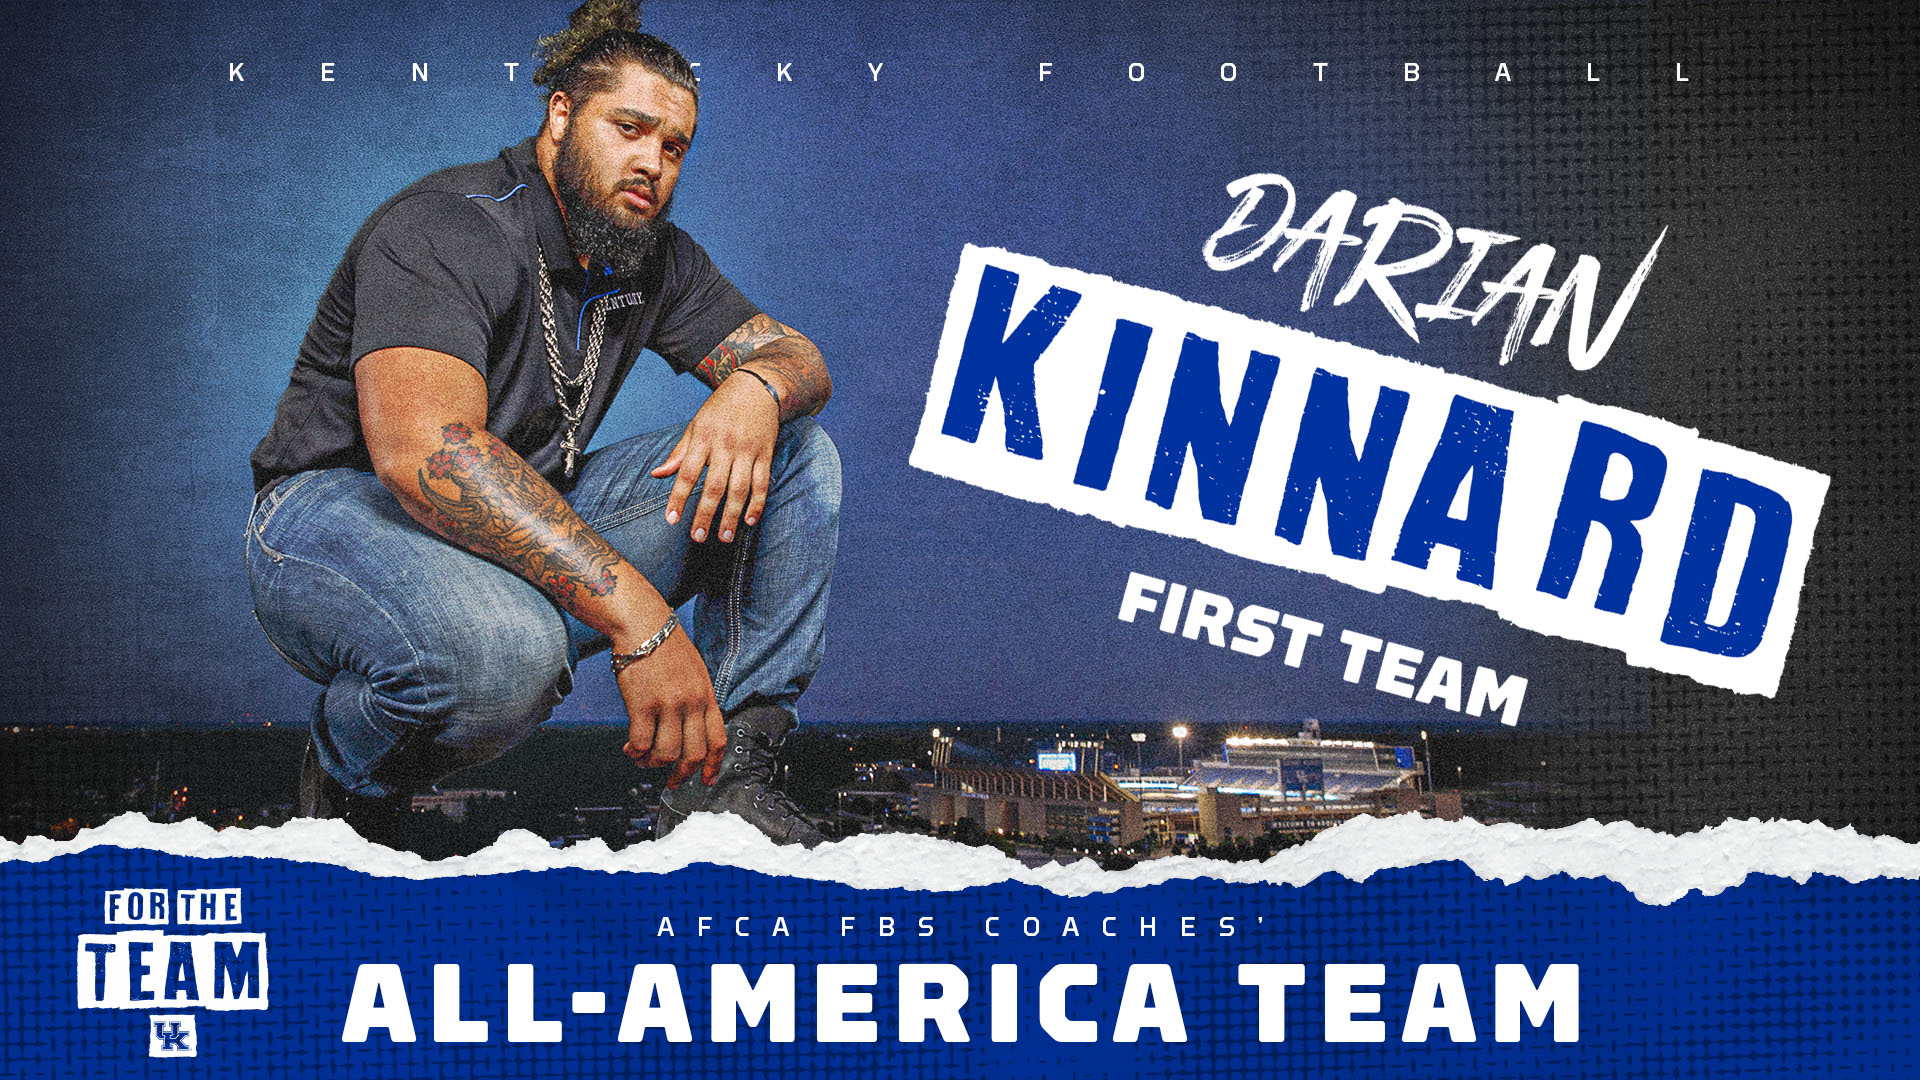 Darian Kinnard Tabbed AFCA Coaches’ First-Team All-American